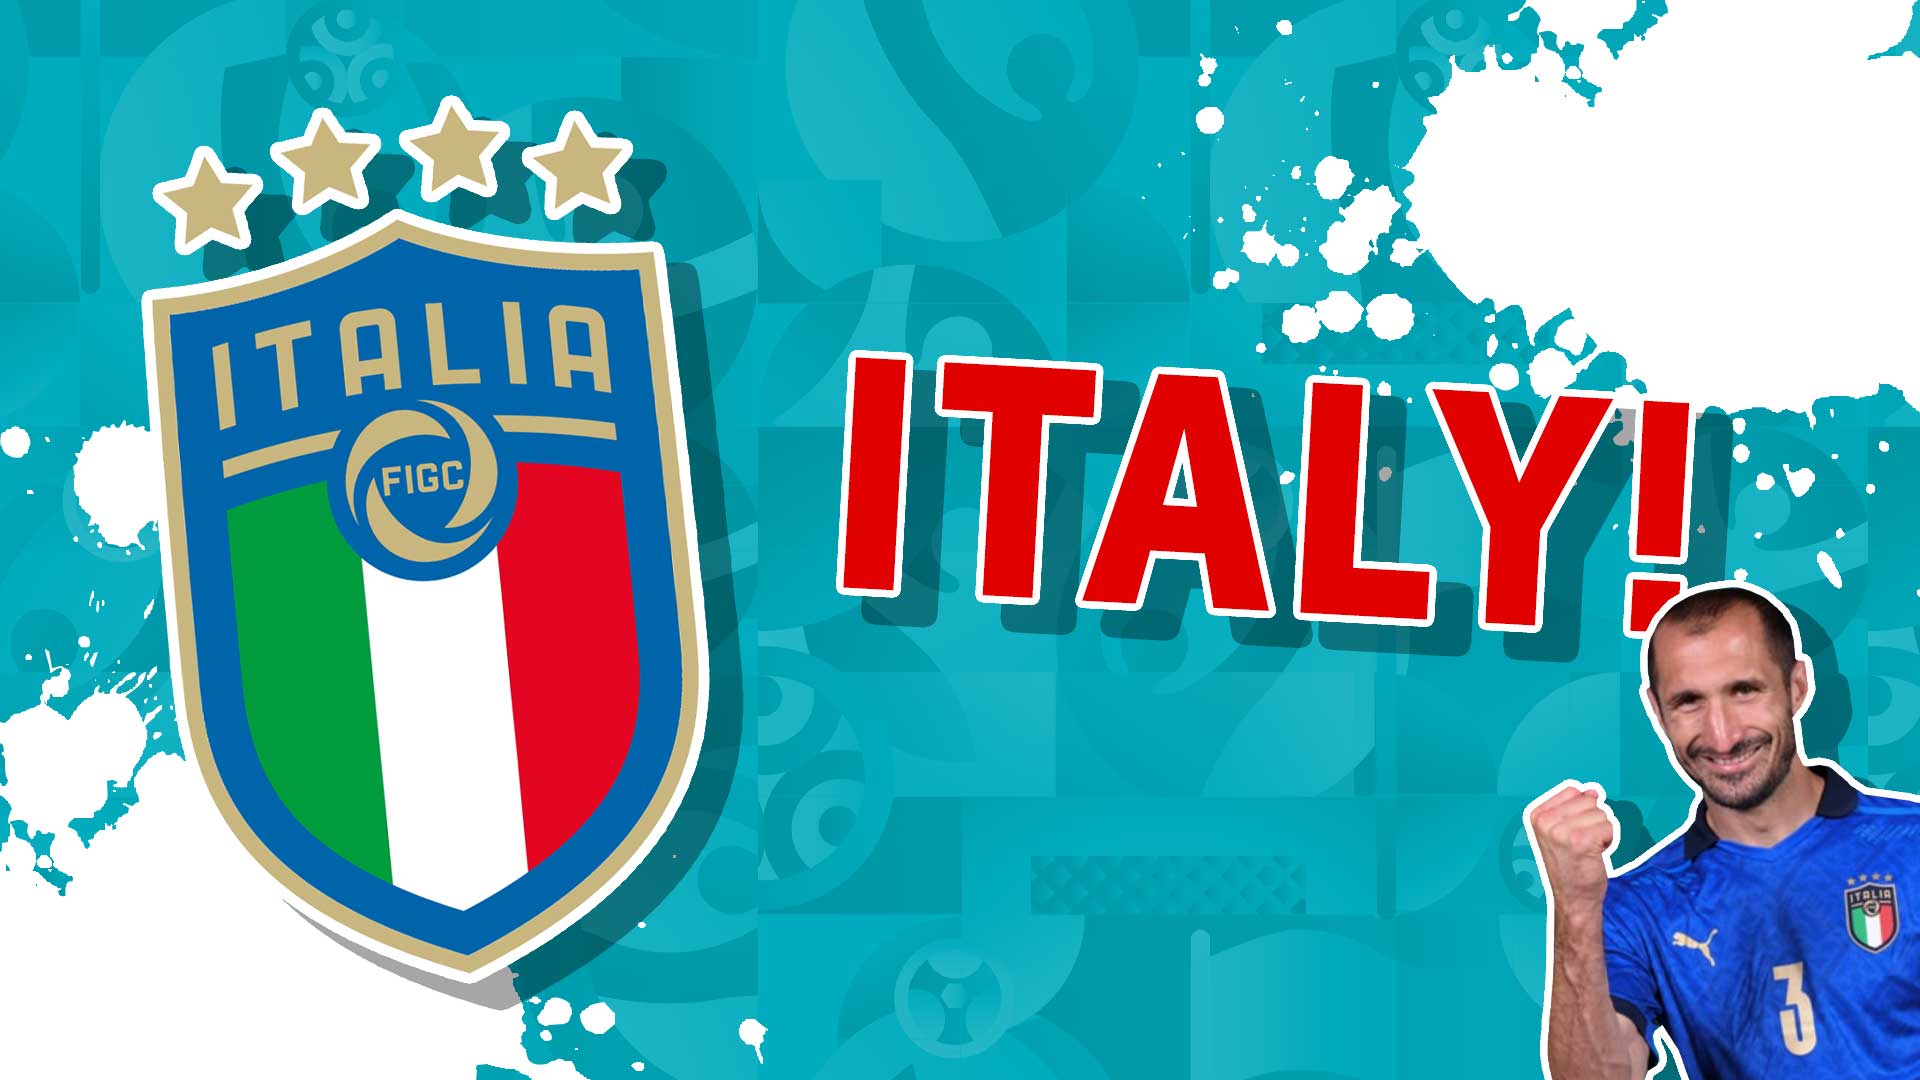 The Italy badge and Giorgio Chiellini